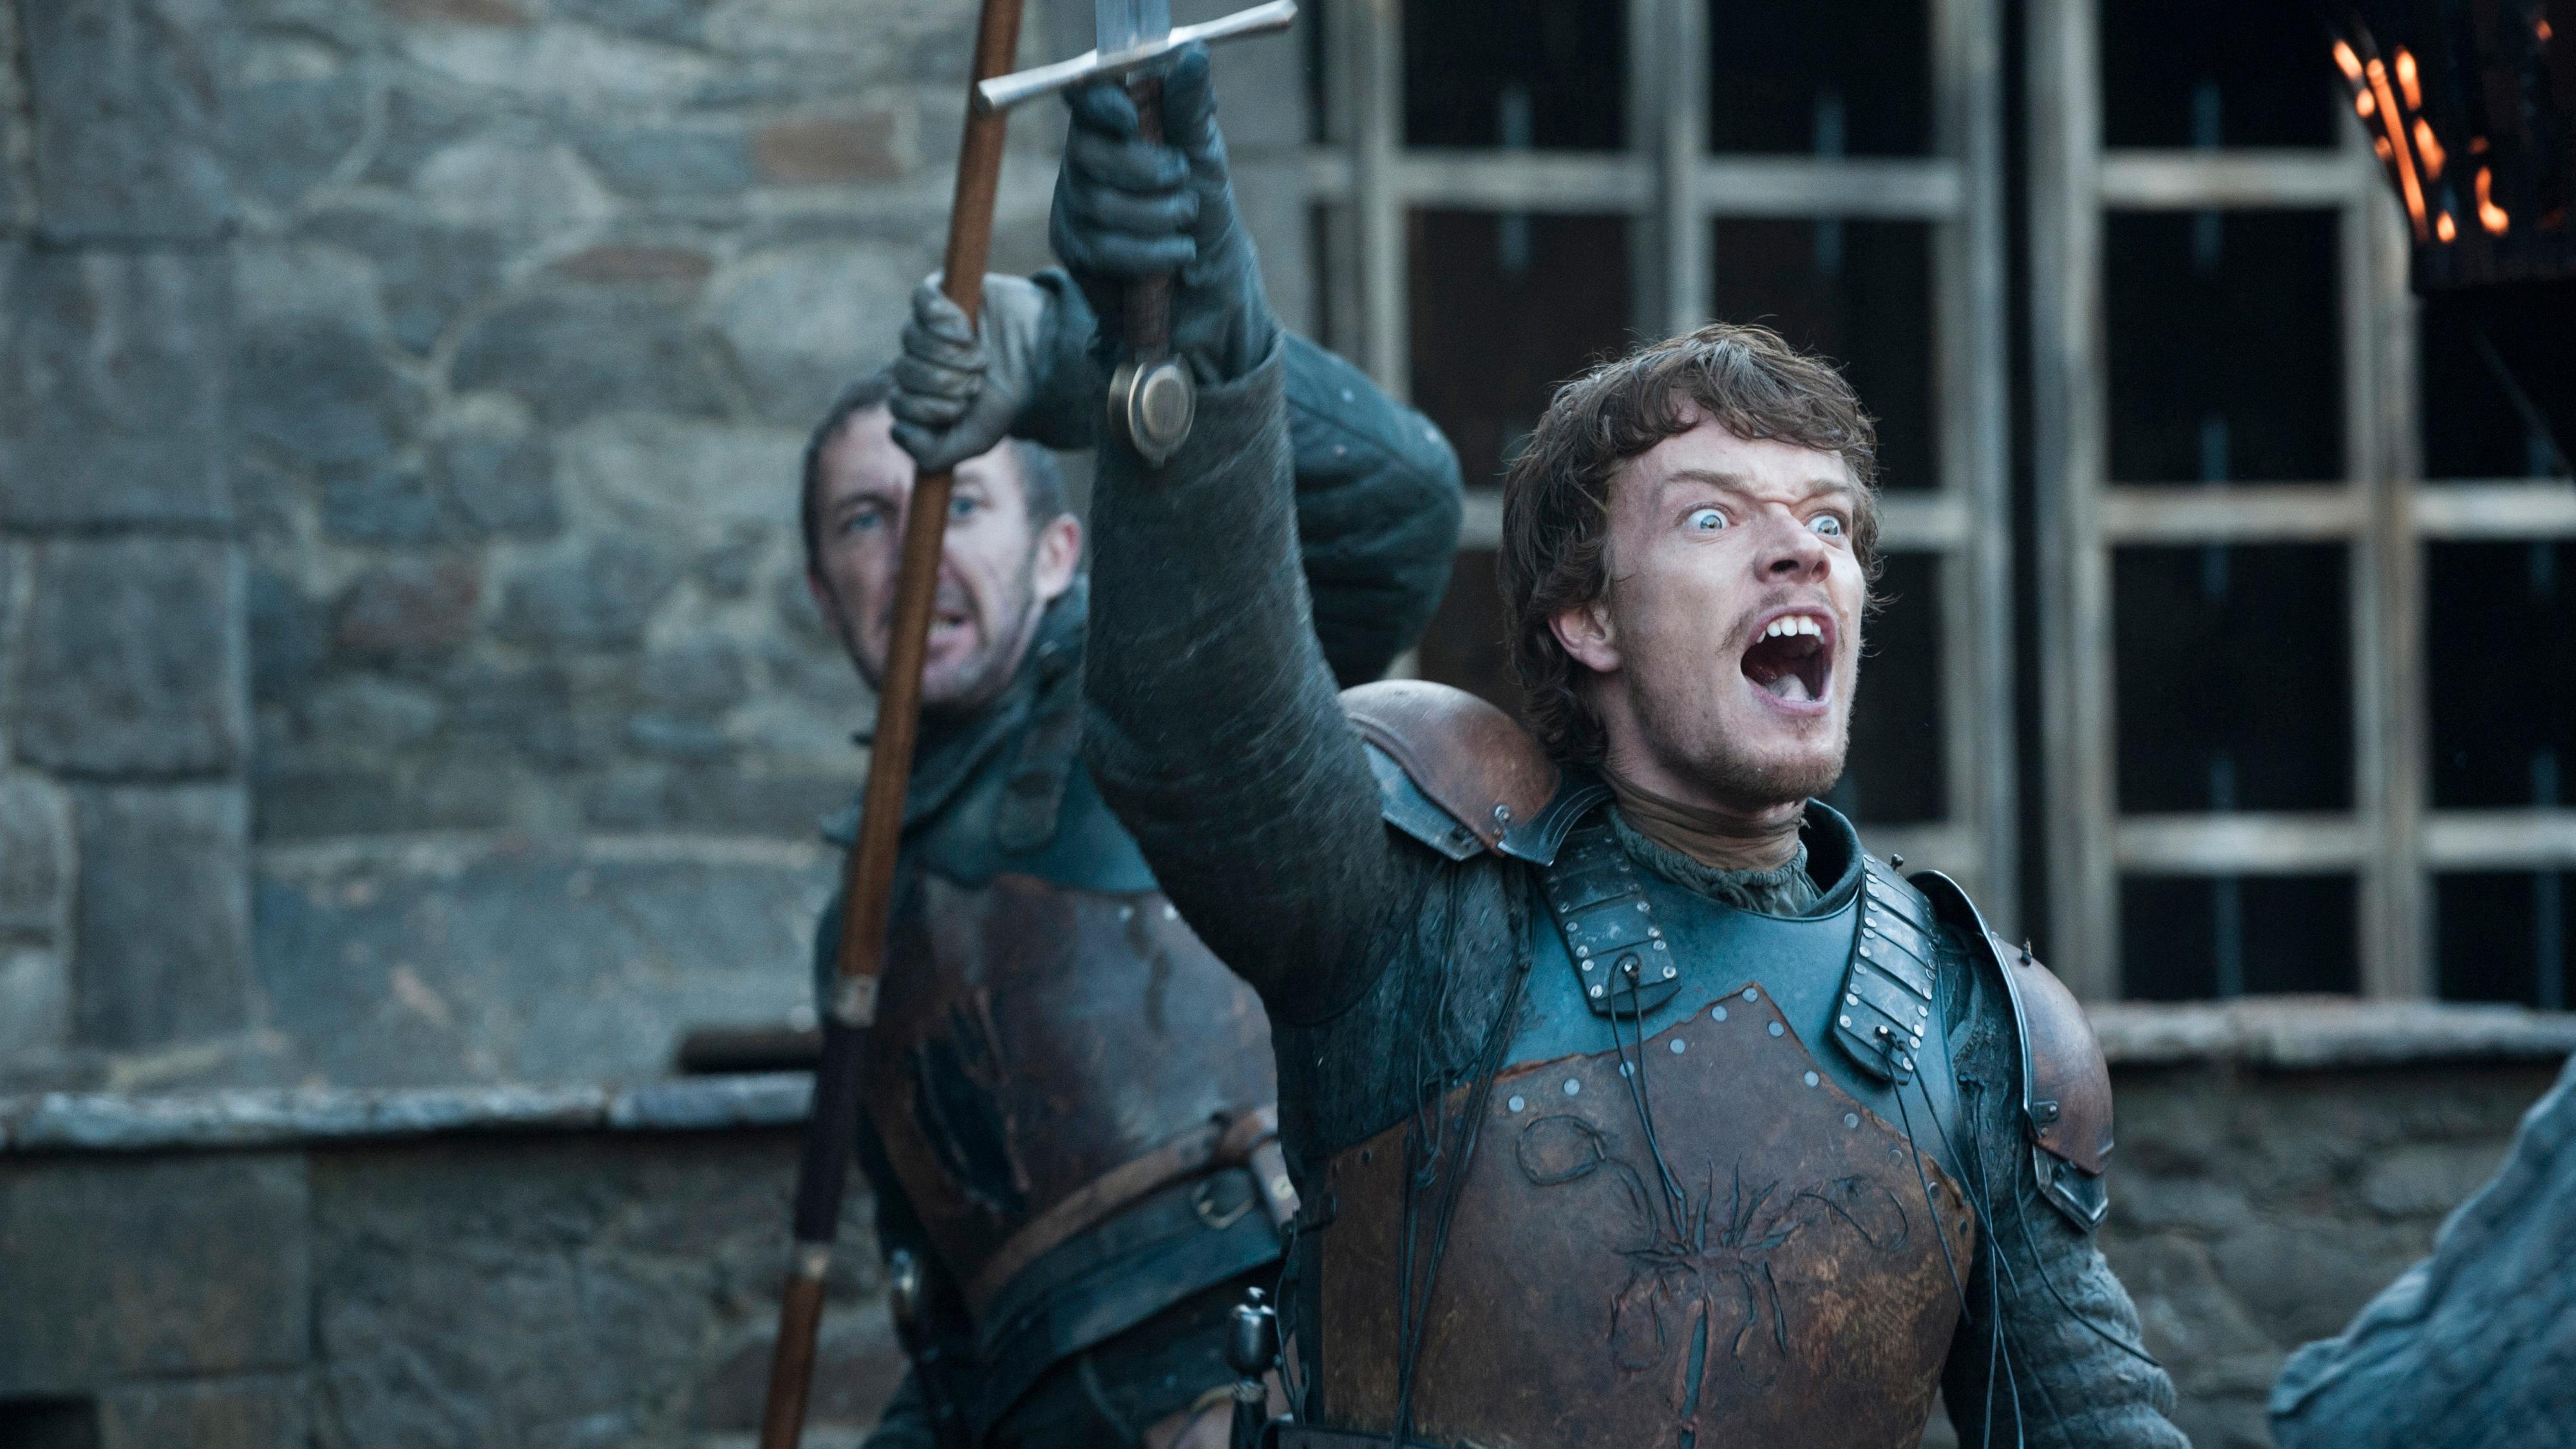 Hackere angrep HBO – Game of Thrones-manus på avveie